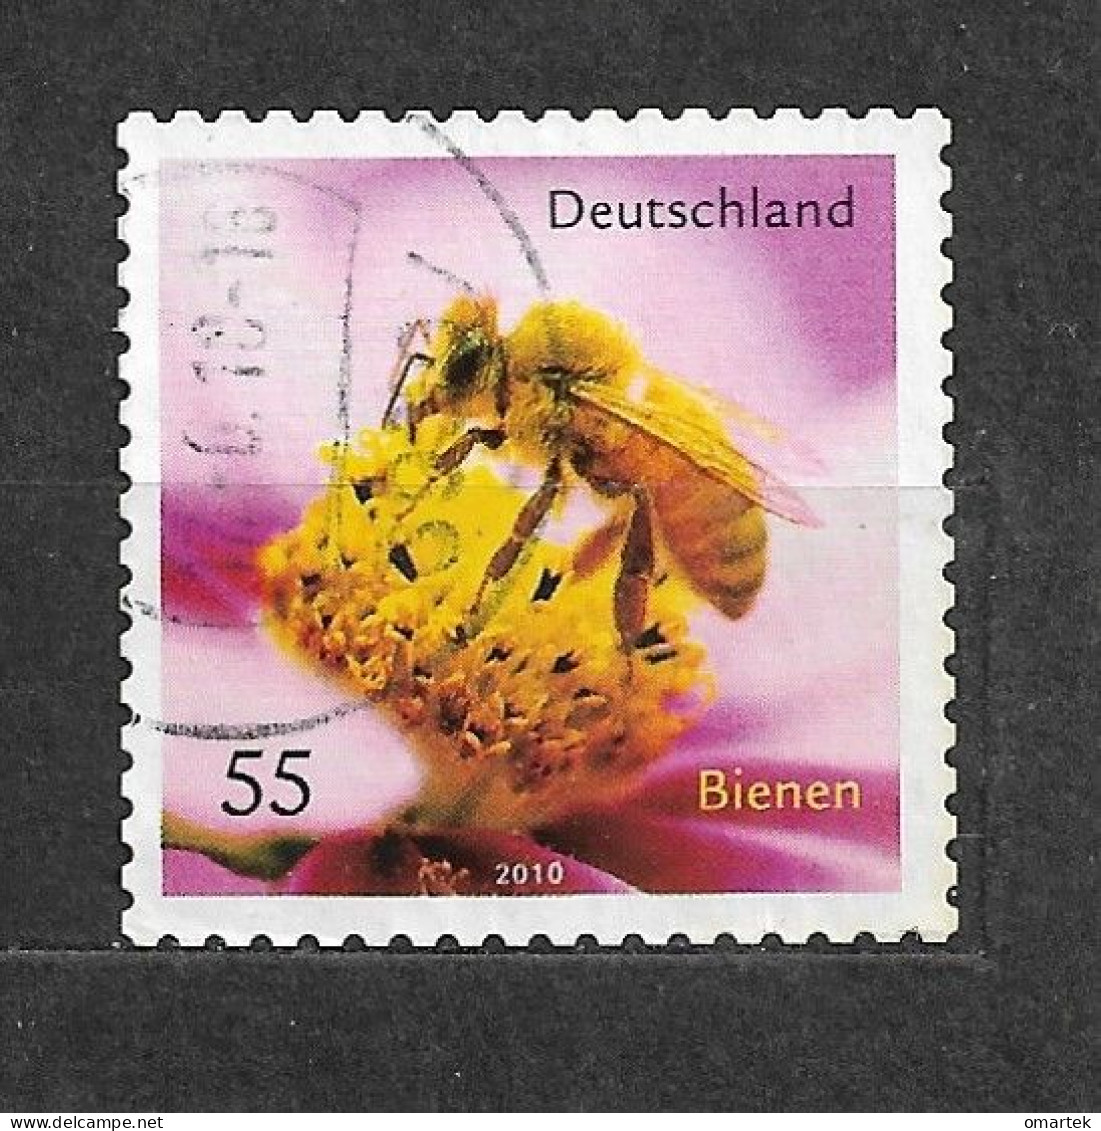 Deutschland Germany BRD 2010 ⊙ Mi 2799 Bienen. Honey Bee. - Used Stamps